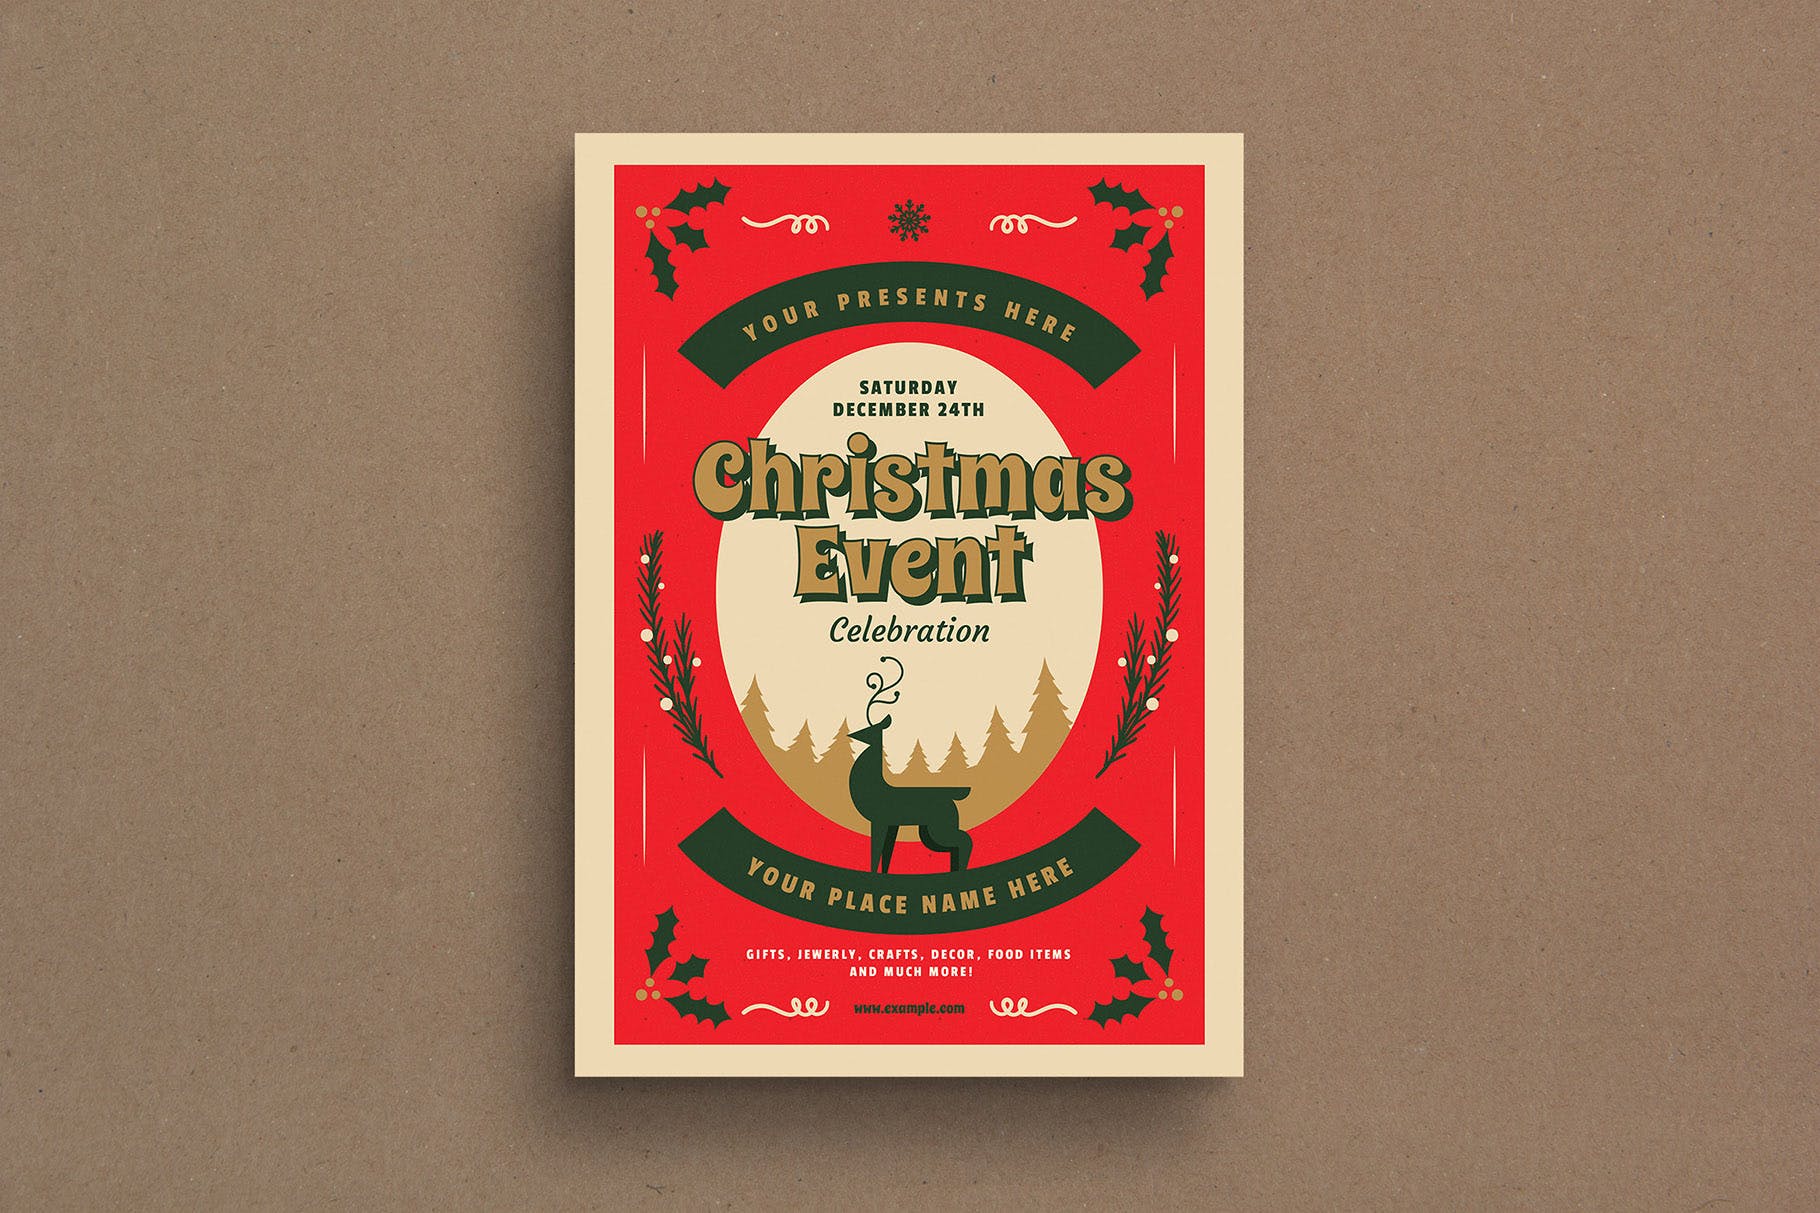 复古设计风格圣诞节活动海报传单模板v1 Retro Christmas Event Flyer插图(1)